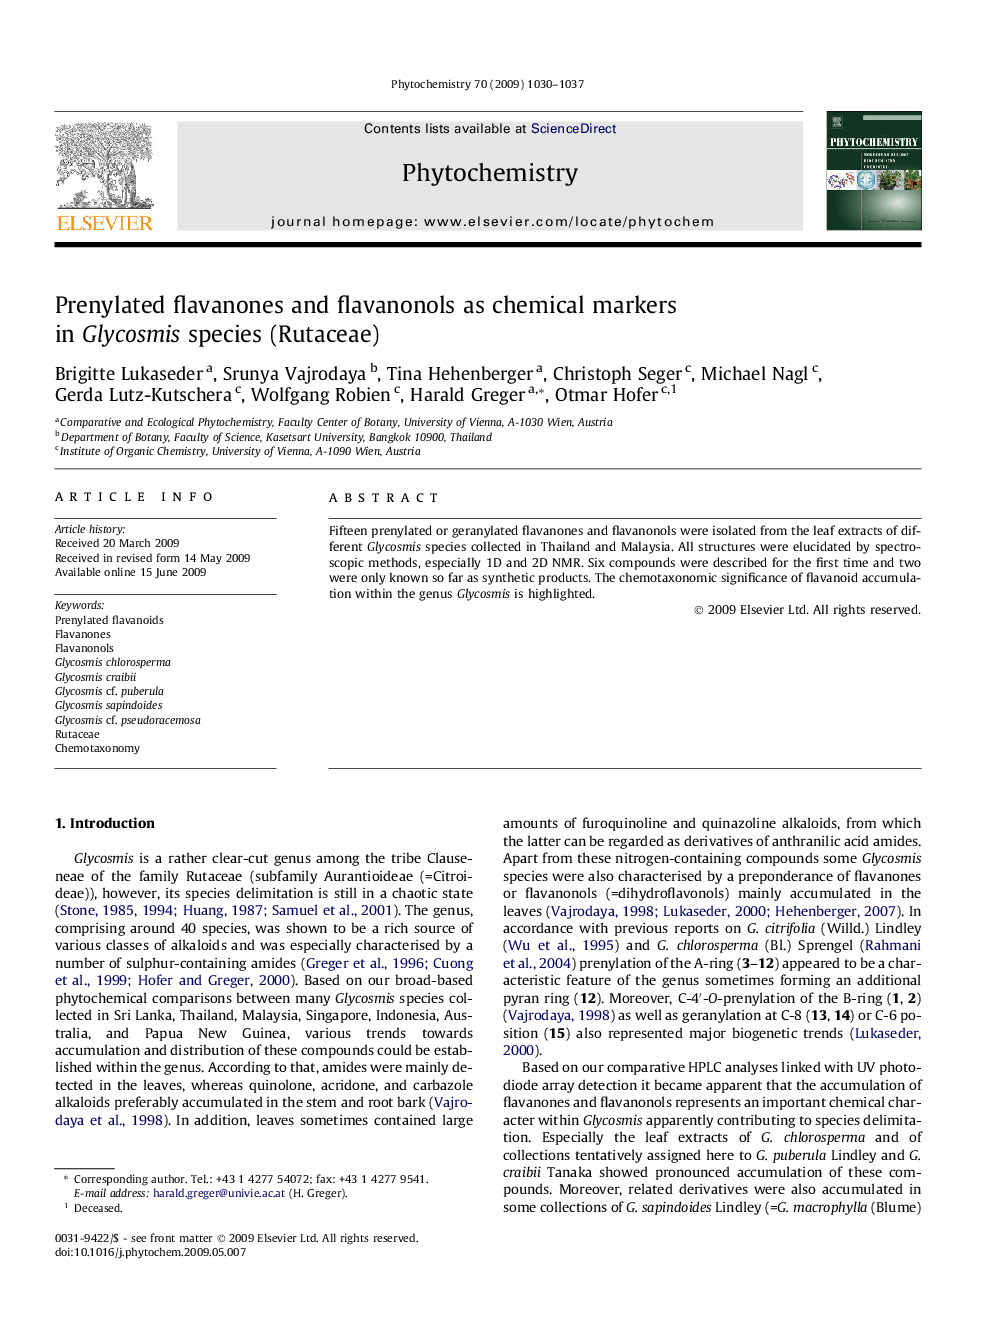 Prenylated flavanones and flavanonols as chemical markers in Glycosmis species (Rutaceae)